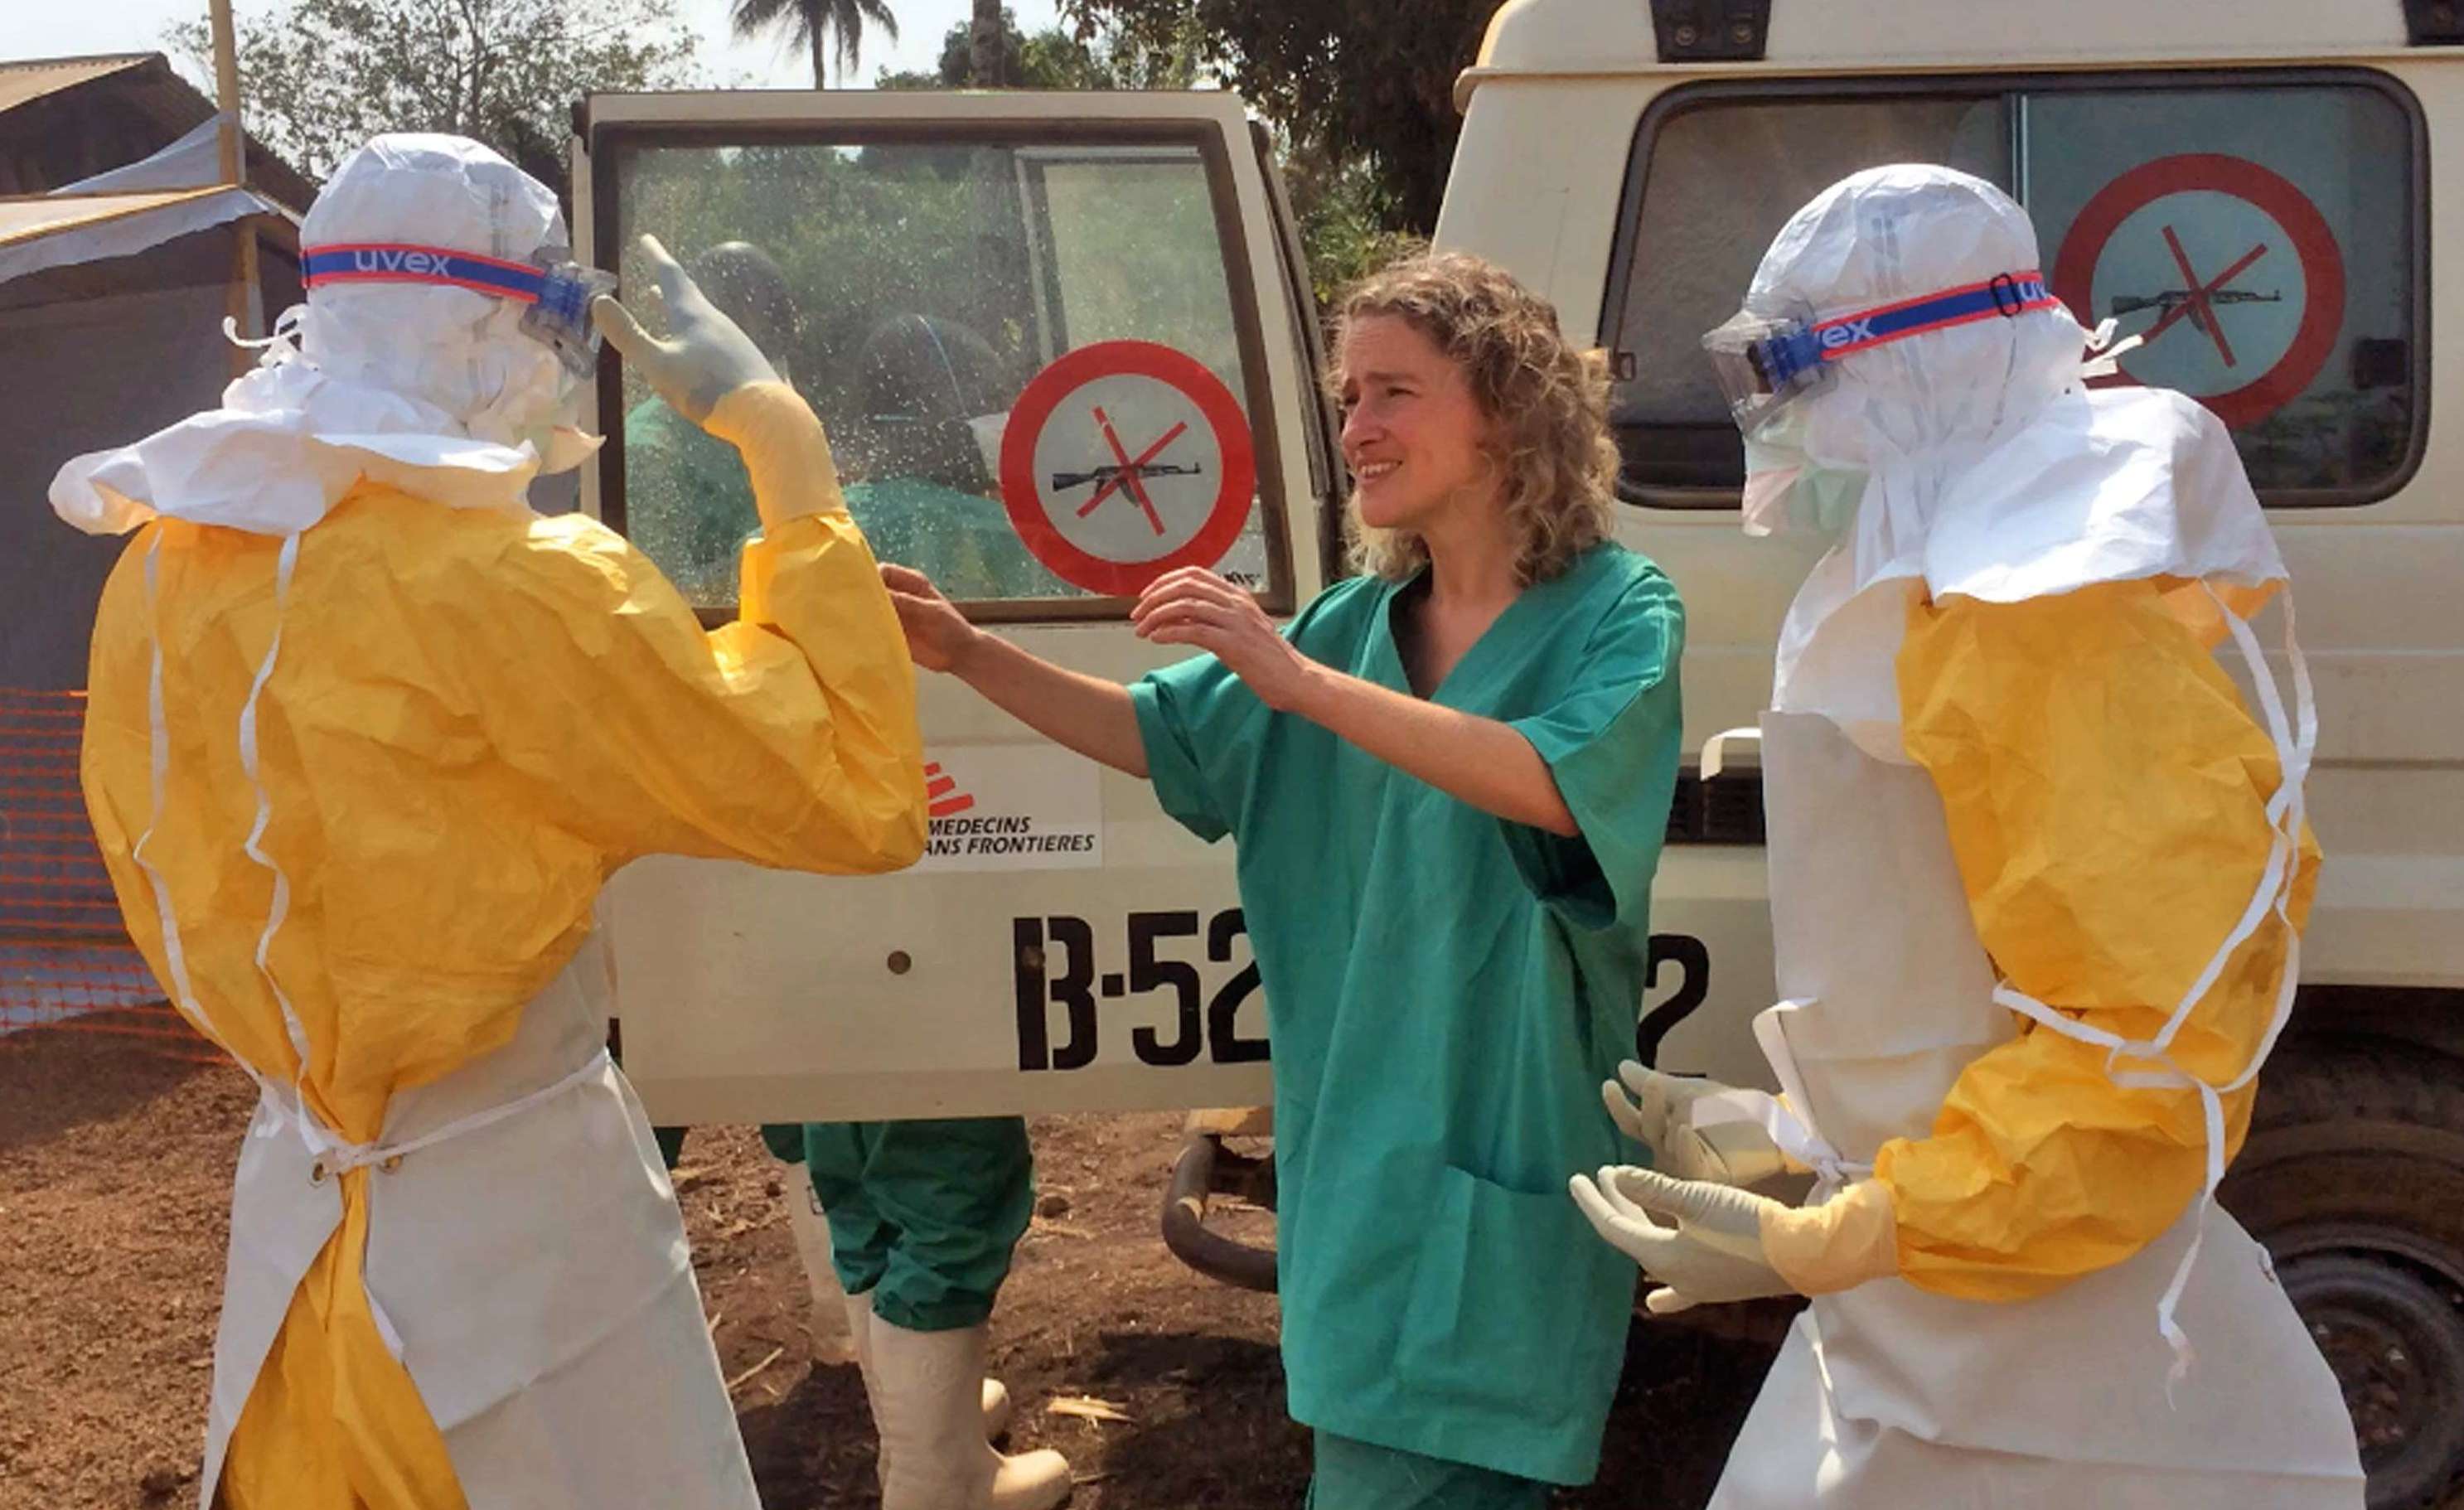 Ebola : l'Afrique de l'Ouest confrontée à une épidémie sans précédent